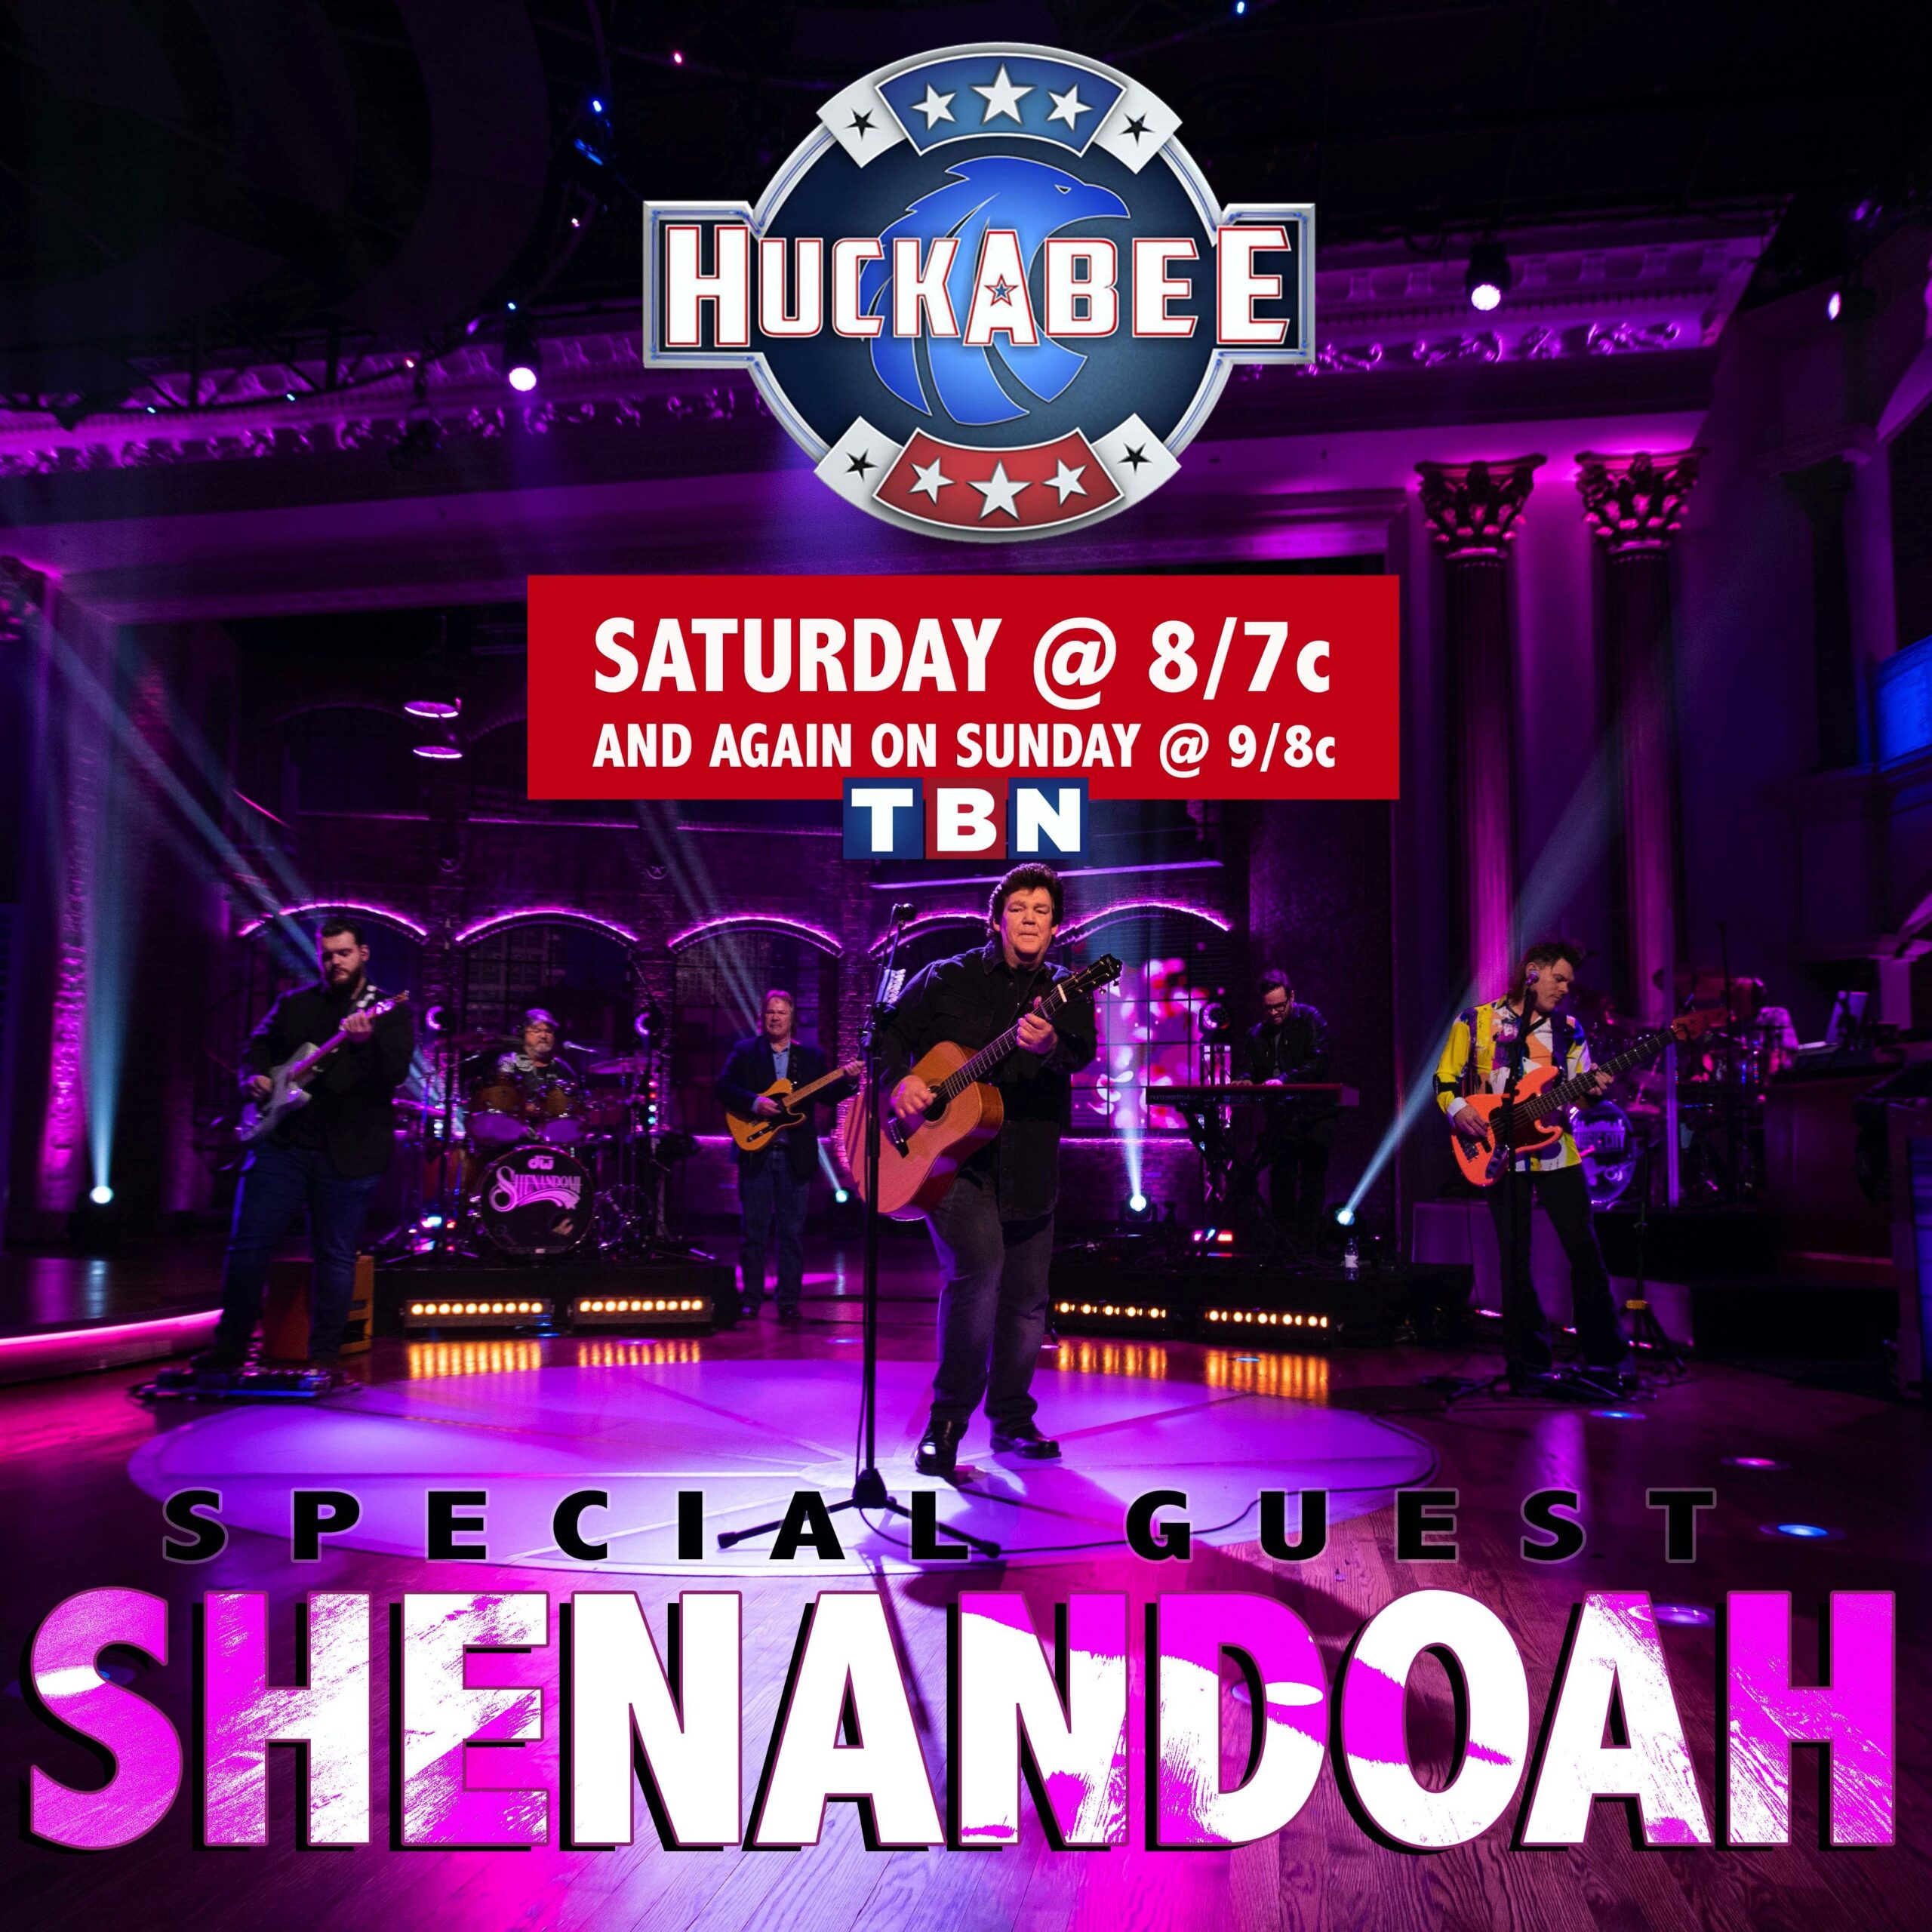 Shenandoah to Perform "Make It Til Summertime" on TBN's "Huckabee